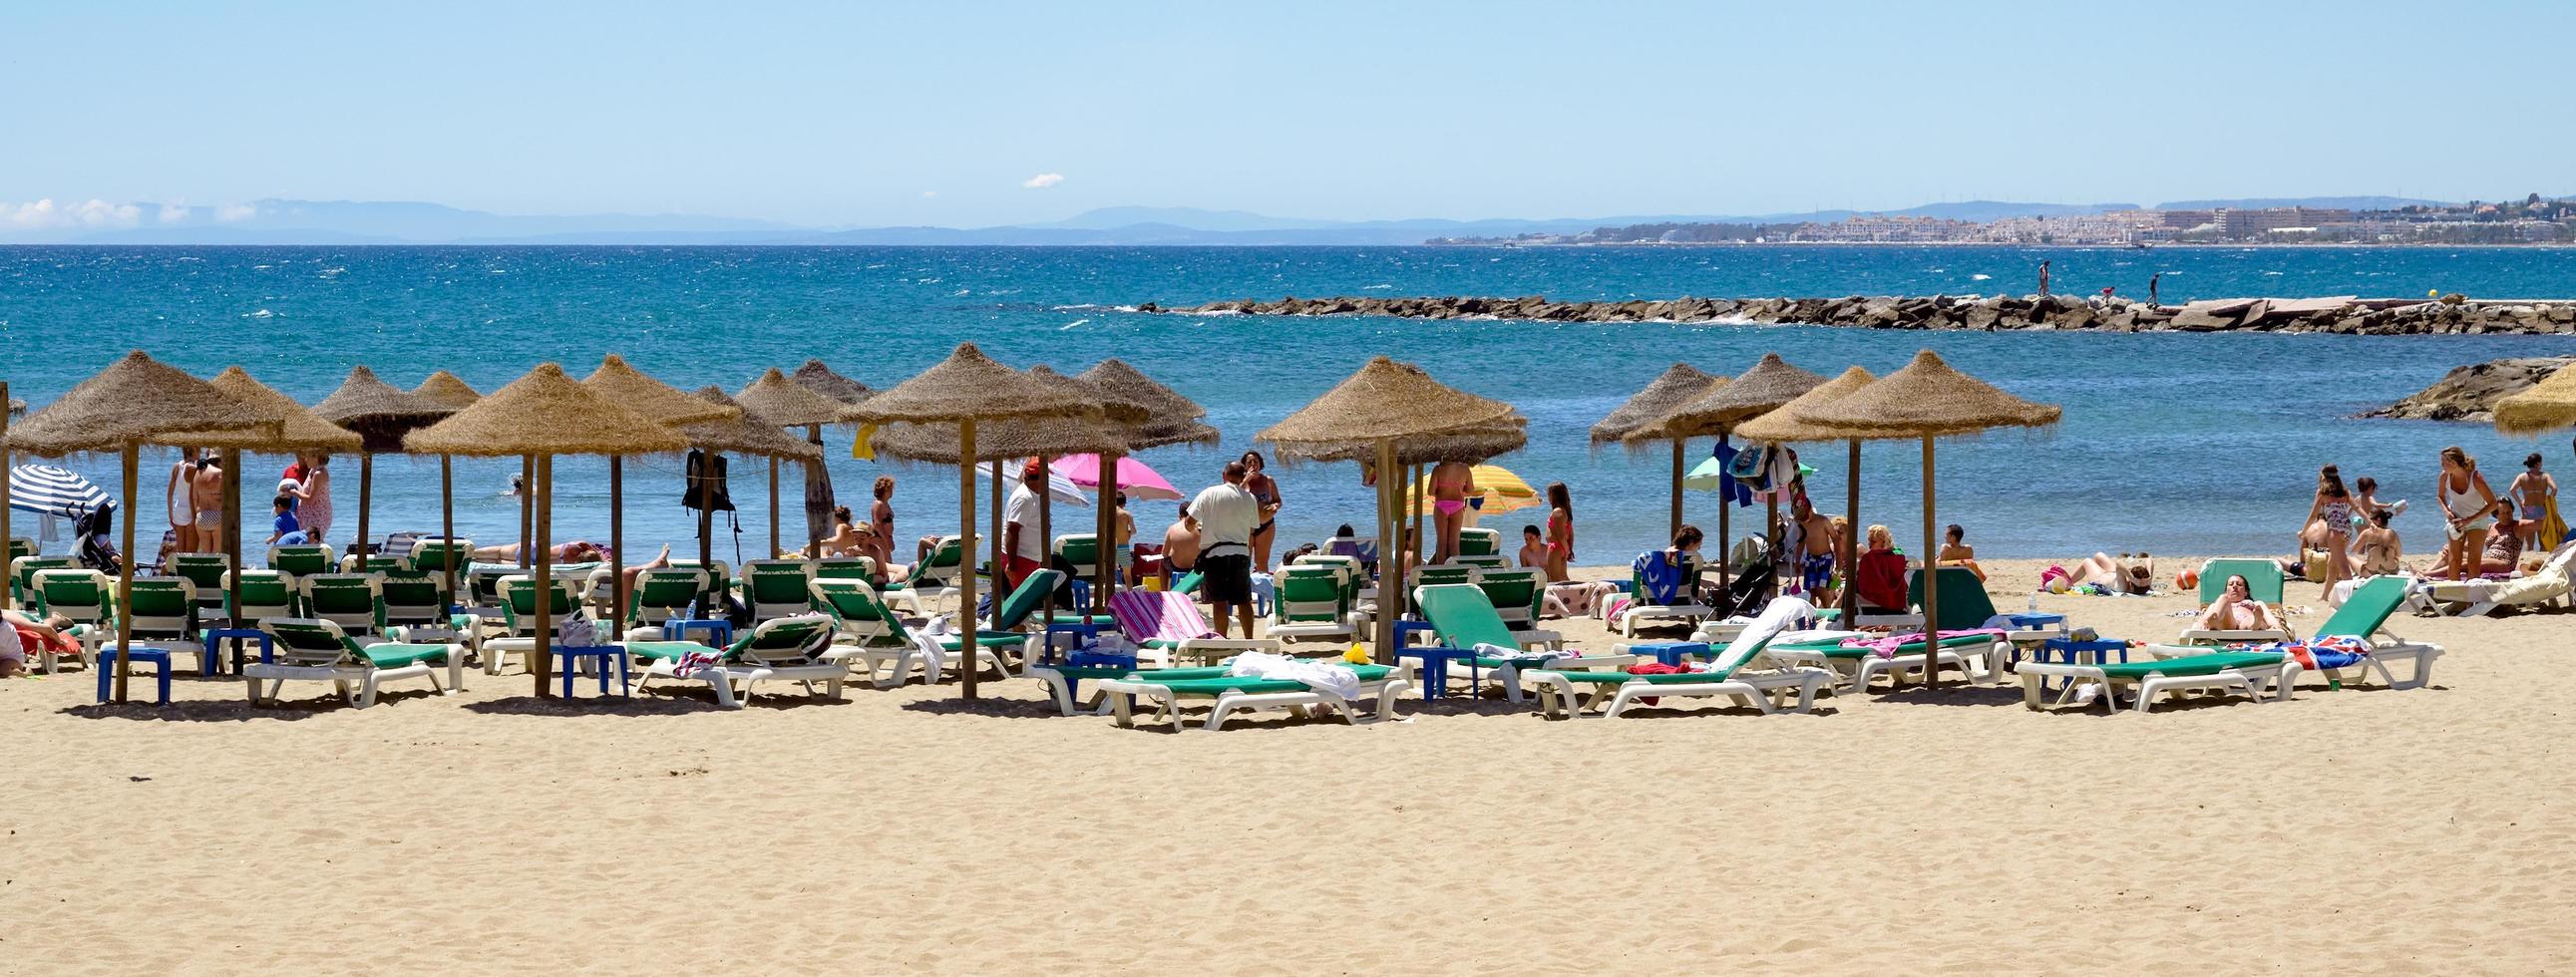 marbella, andalusien, spanien, 2014. utsikt över stranden i marbella spanien den 4 maj 2014. oidentifierade personer. foto